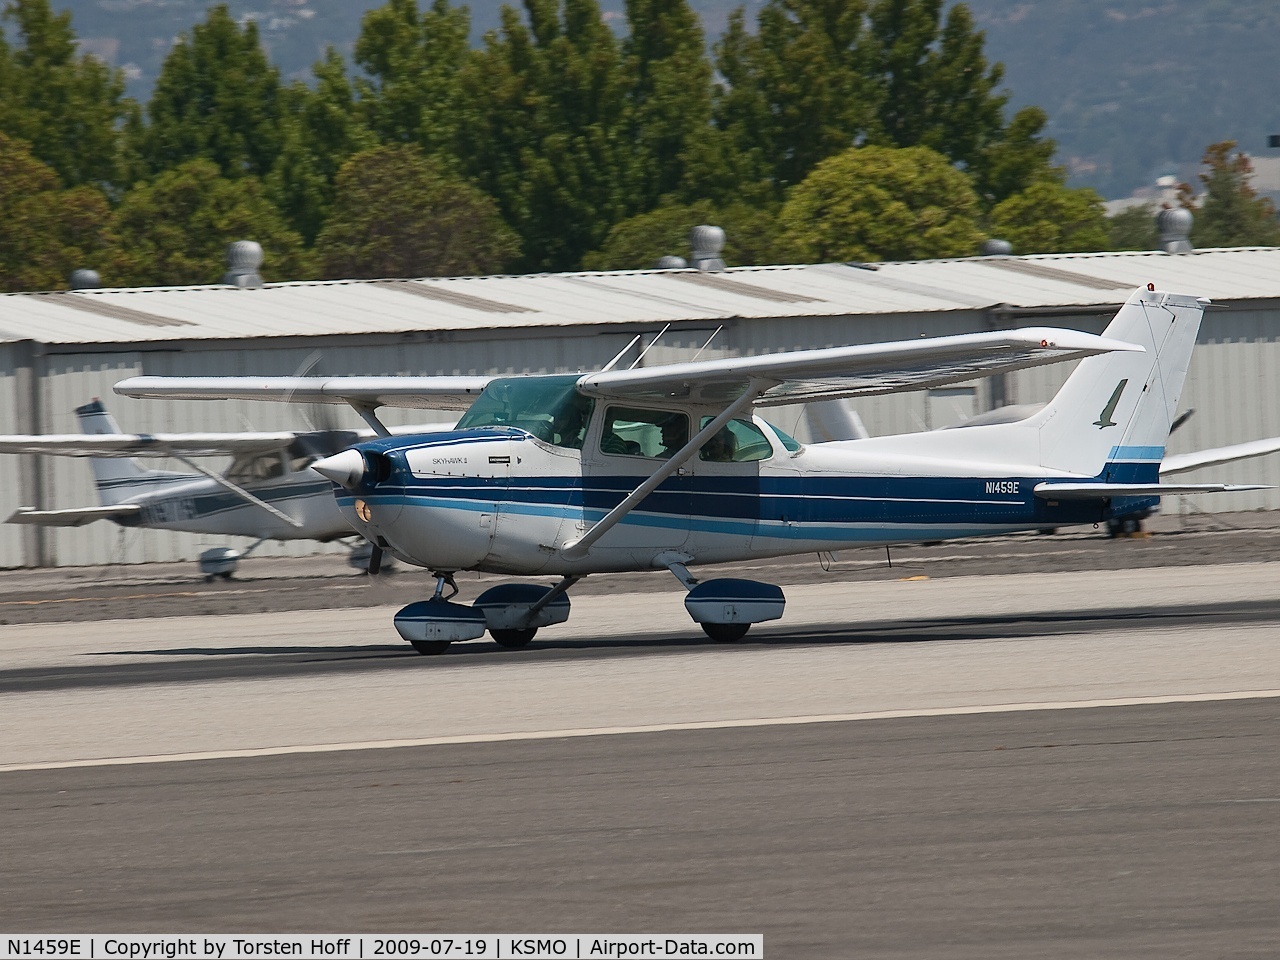 N1459E, 1978 Cessna 172N C/N 17271007, N1459E departing from RWY 21